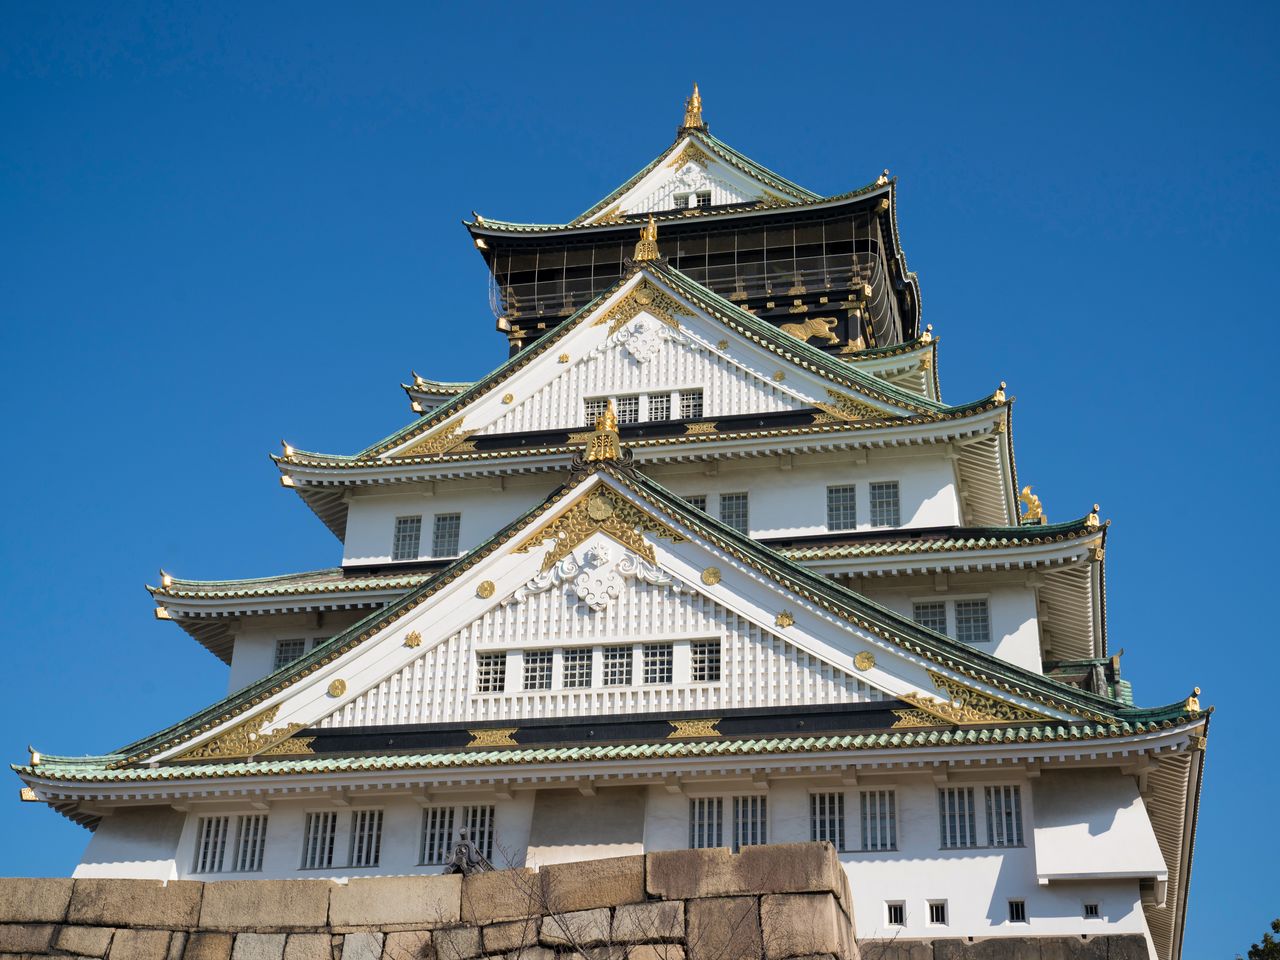 El torreón actual del castillo reconstruido por expertos a partir de las imágenes del Biombo del Sitio de Verano de Osaka.